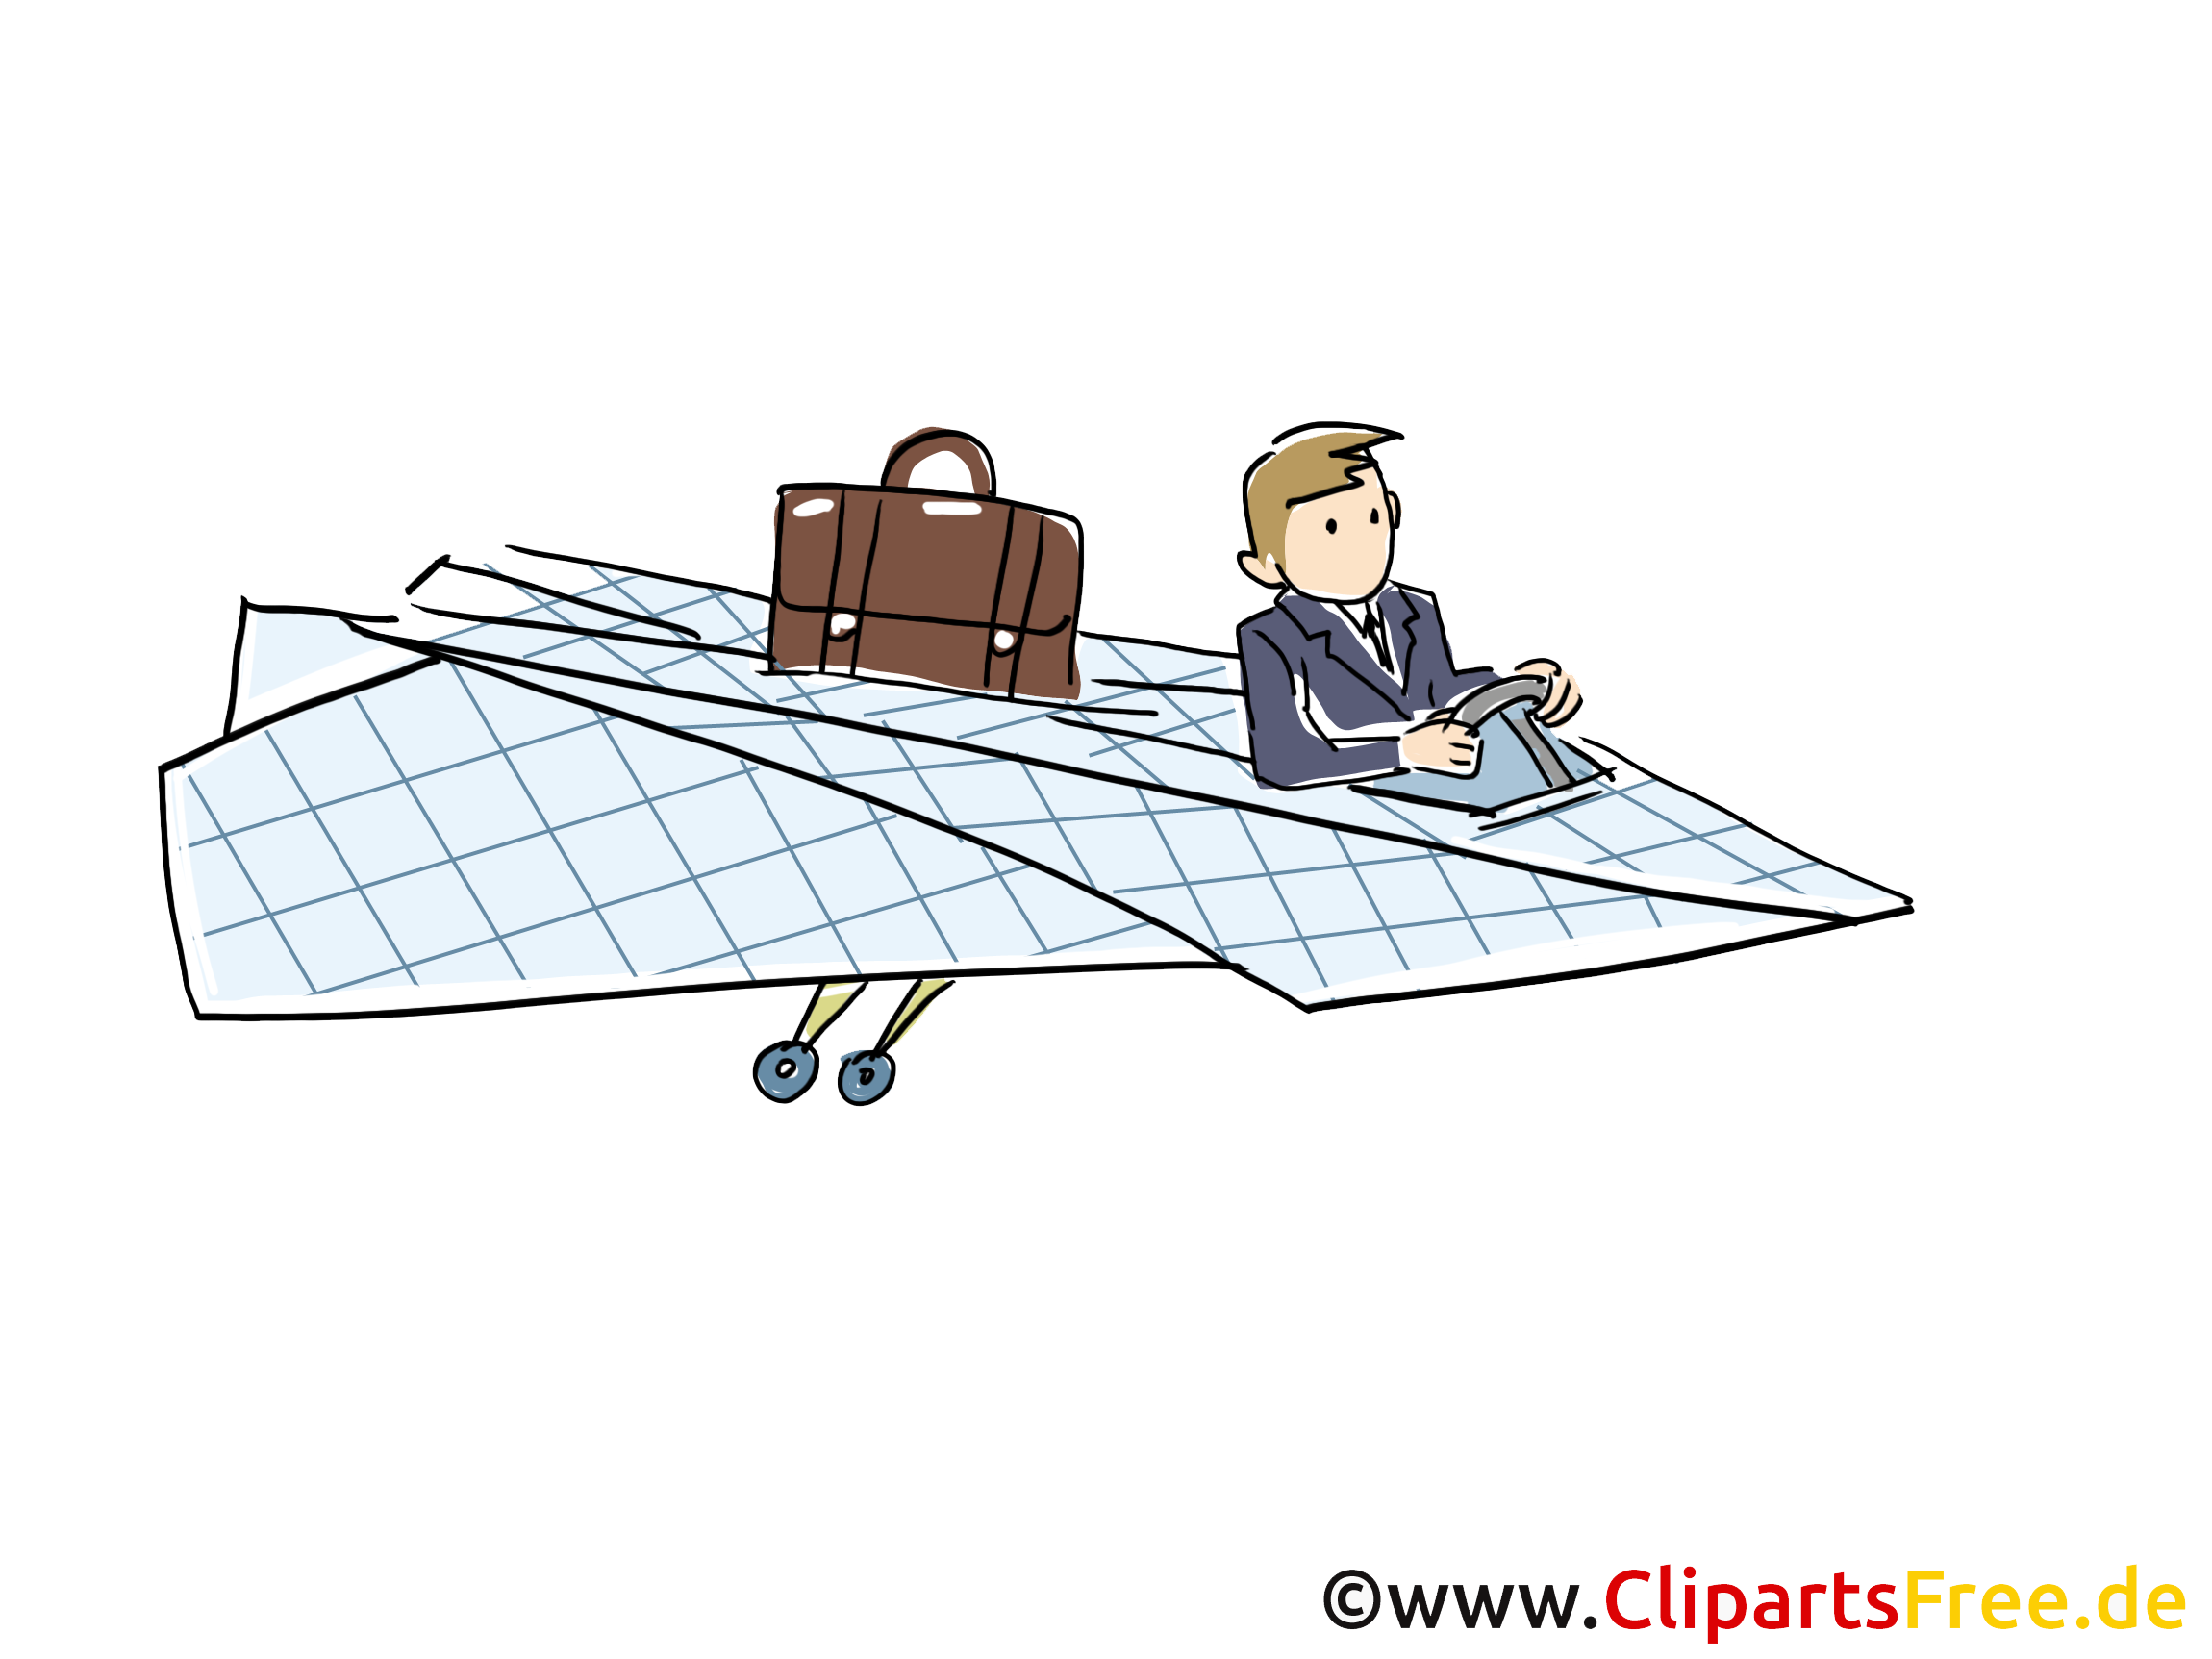 clipart flugzeug mit banner kostenlos - photo #36